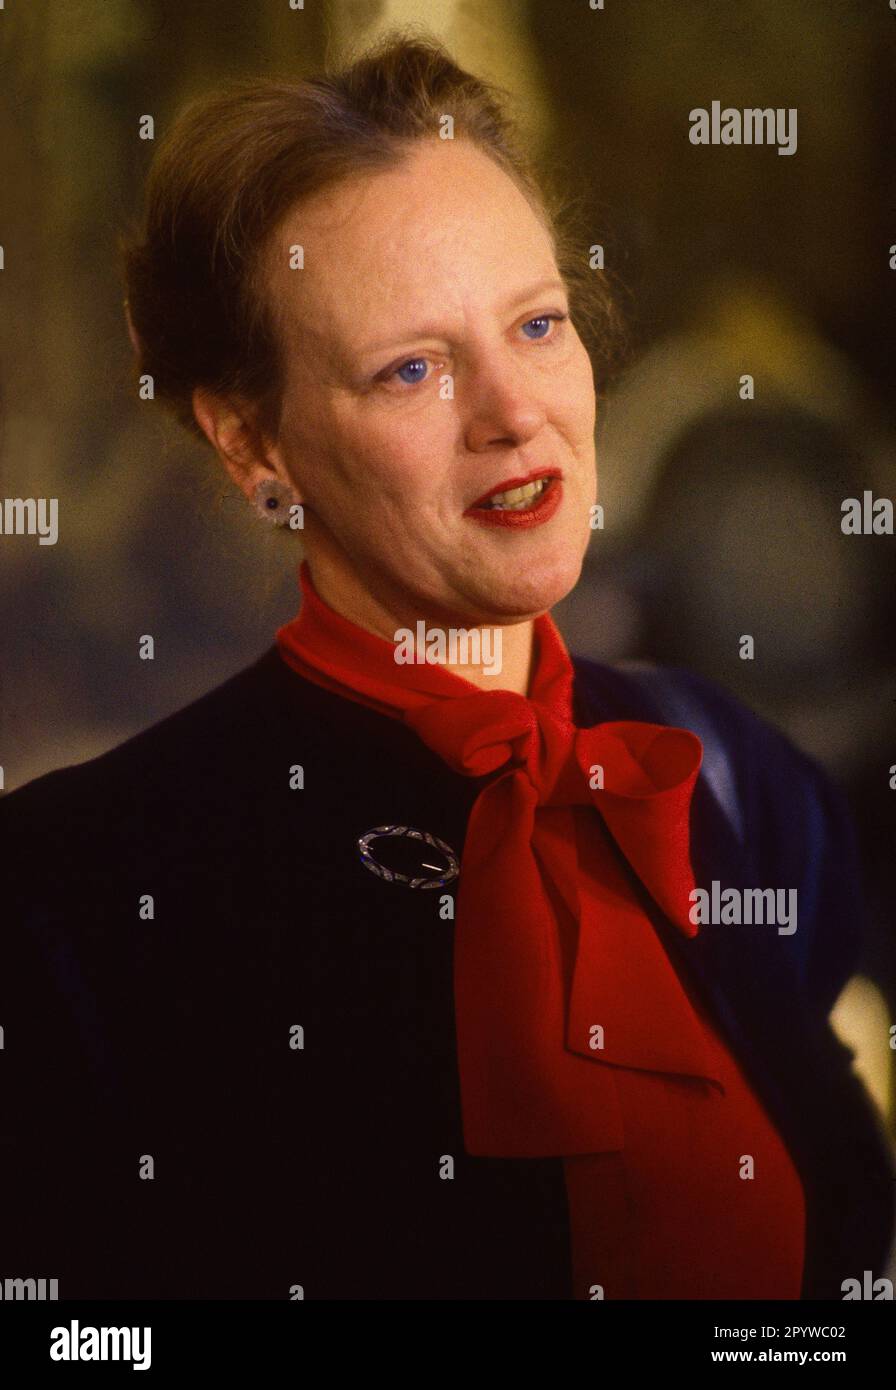 Danemark, Copenhague, 20.05.1996 Royal Danish House photo: Queen Margrethe II [traduction automatique] Banque D'Images